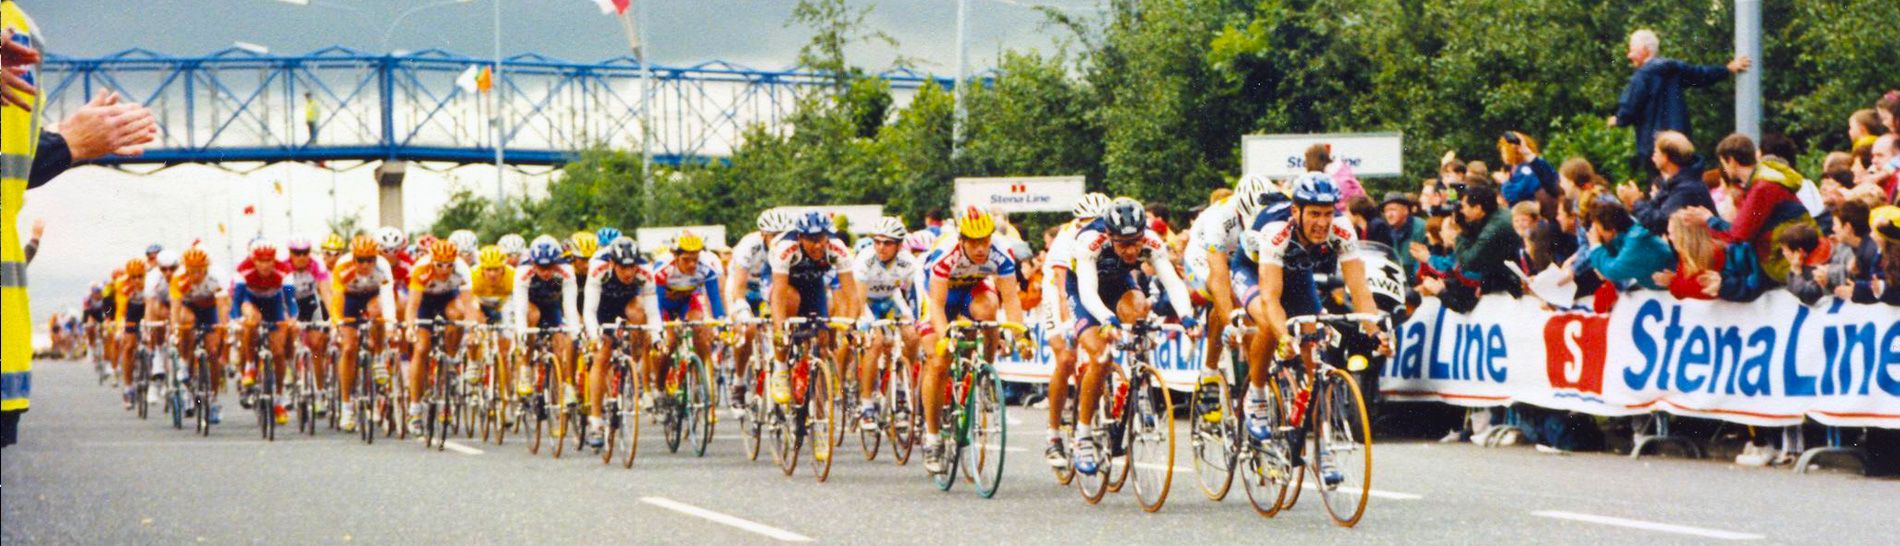 1998 Le Tour de France, Ireland